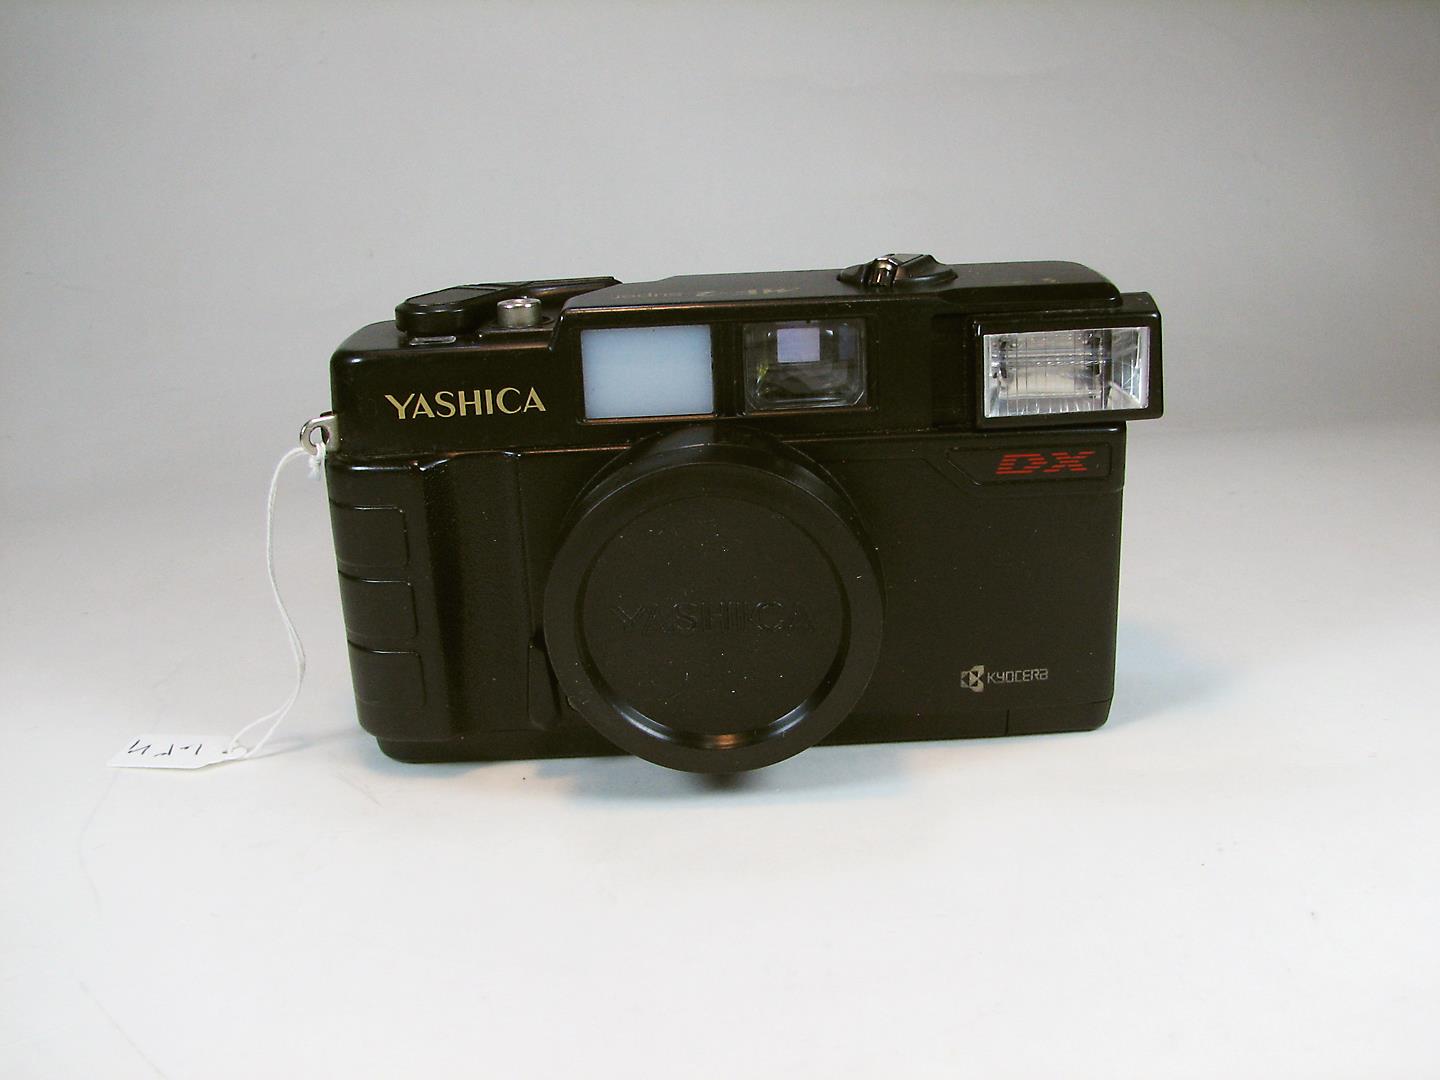 درپوش دوربین یاشیکا Yashica MF-2 48mm